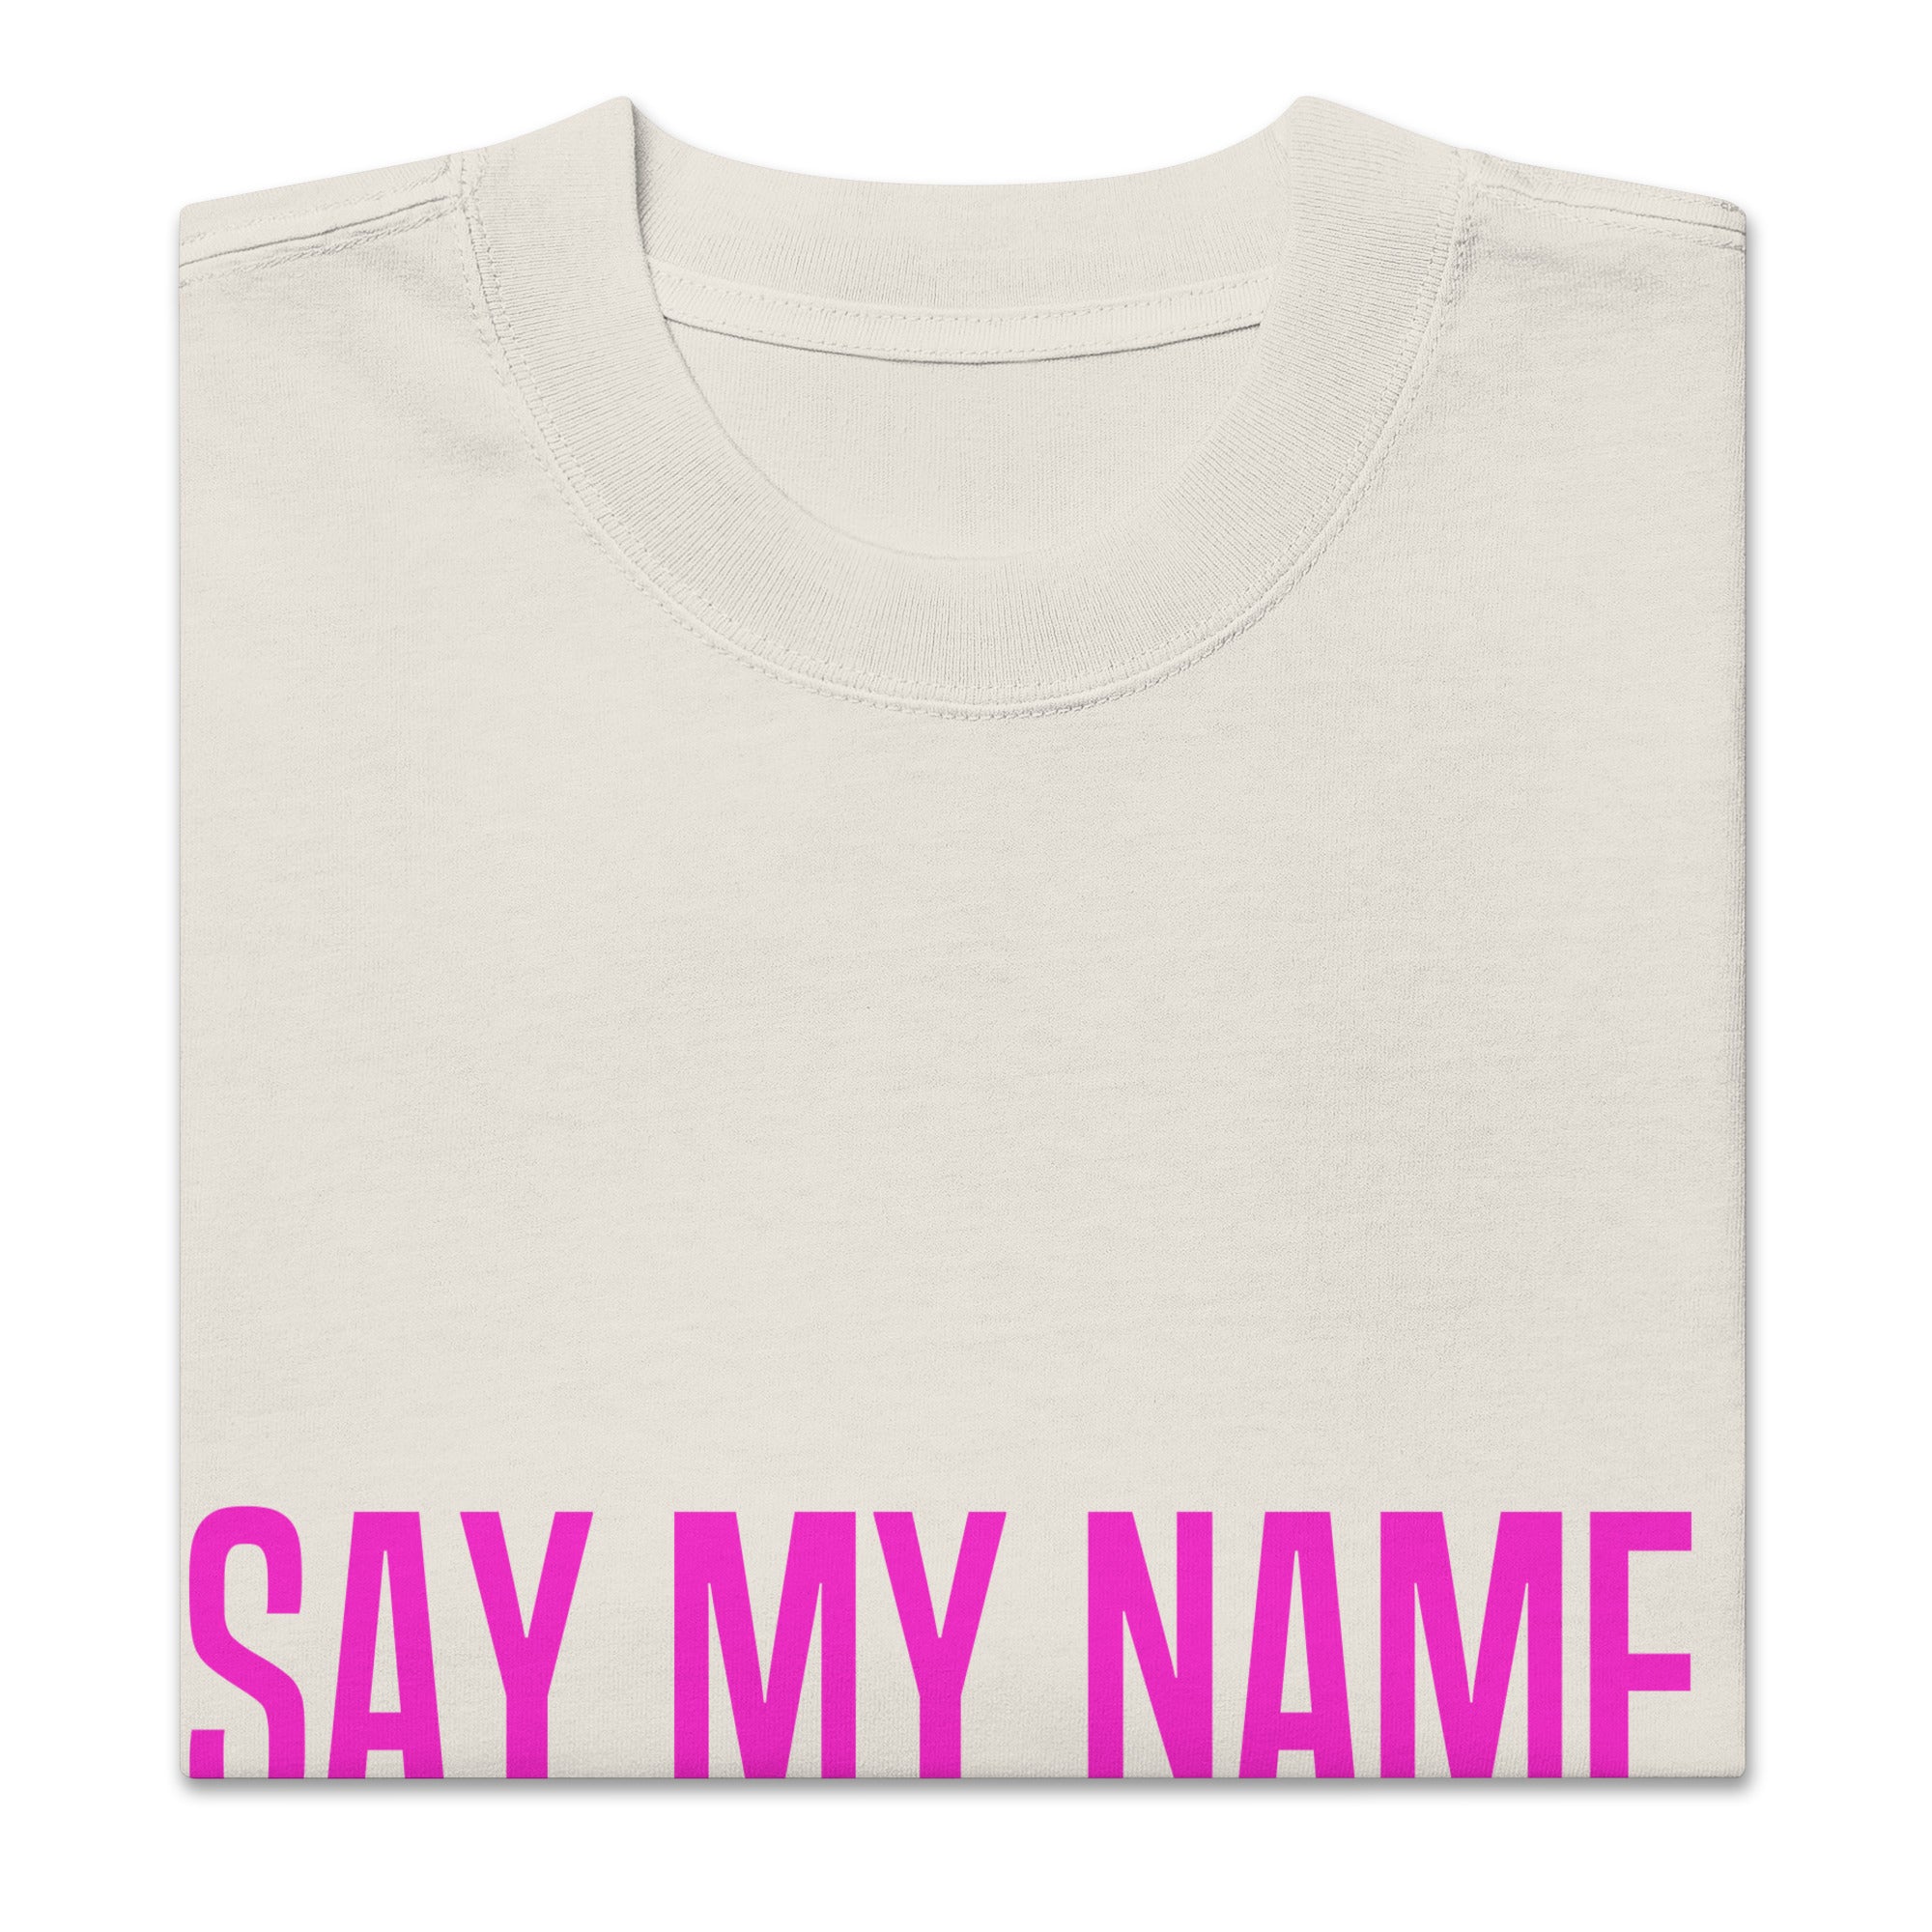 Washed white unisex oversized SUMMER T-SHIRT “SAY MY NAME”